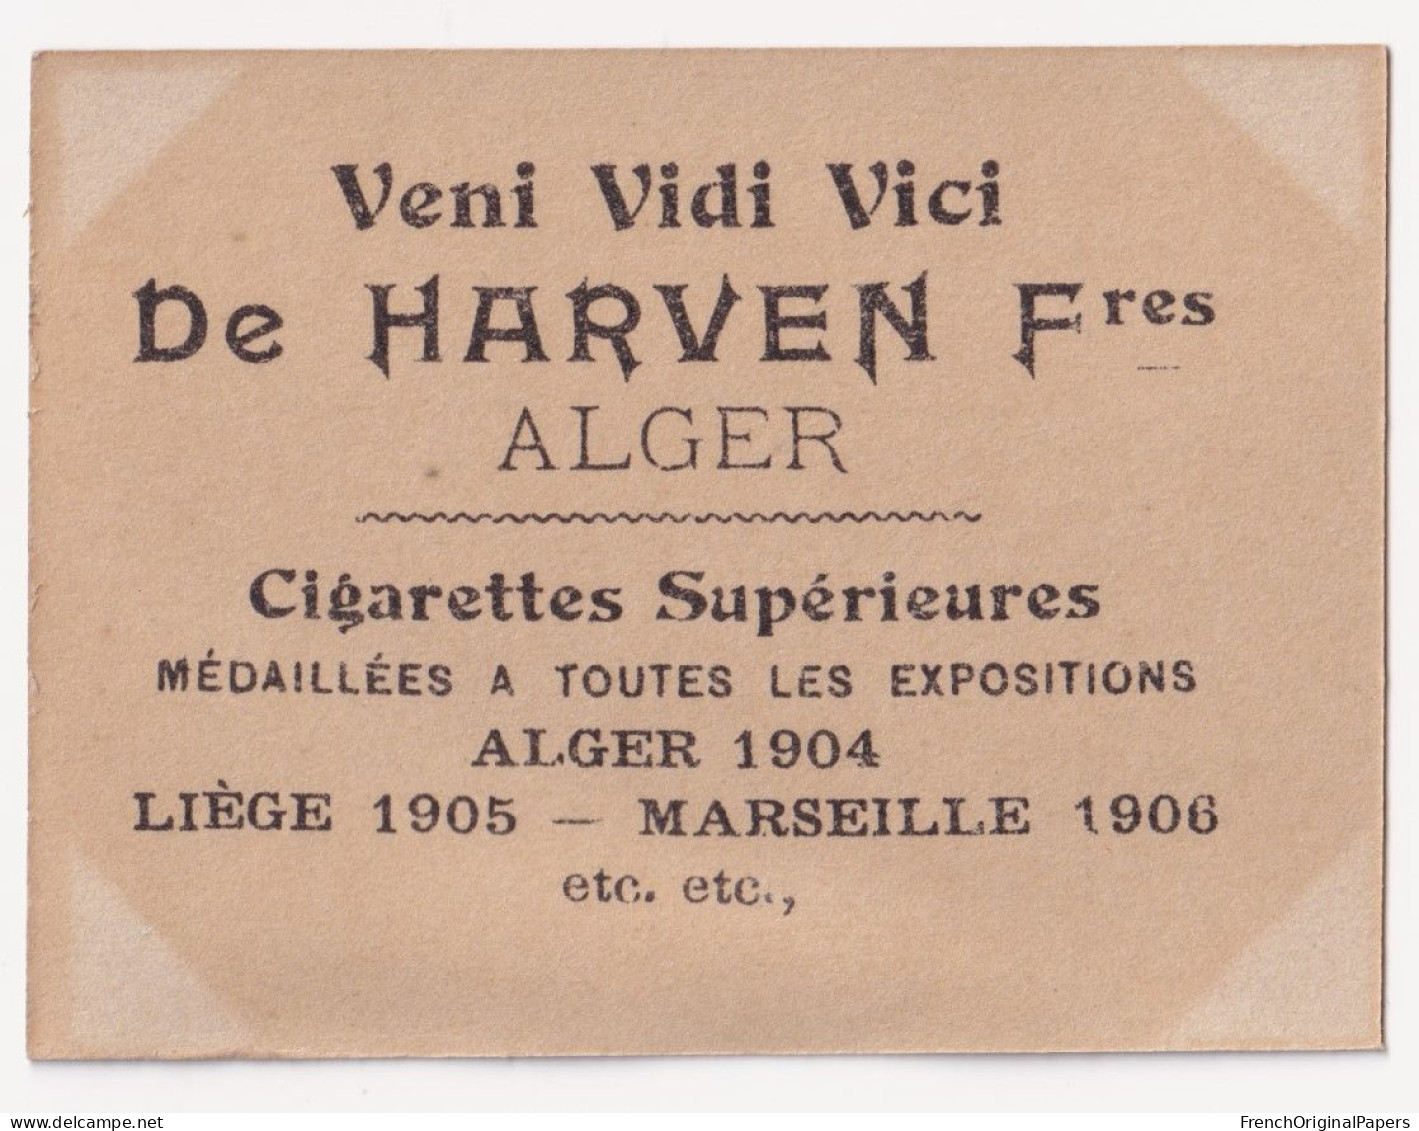 Duhamel -Cigarettes De Harven 1910 Photo Femme Sexy Lady Pin-up Woman Nue Nude Nu Seins Nus Vintage Alger Artiste A62-11 - Zigarettenmarken